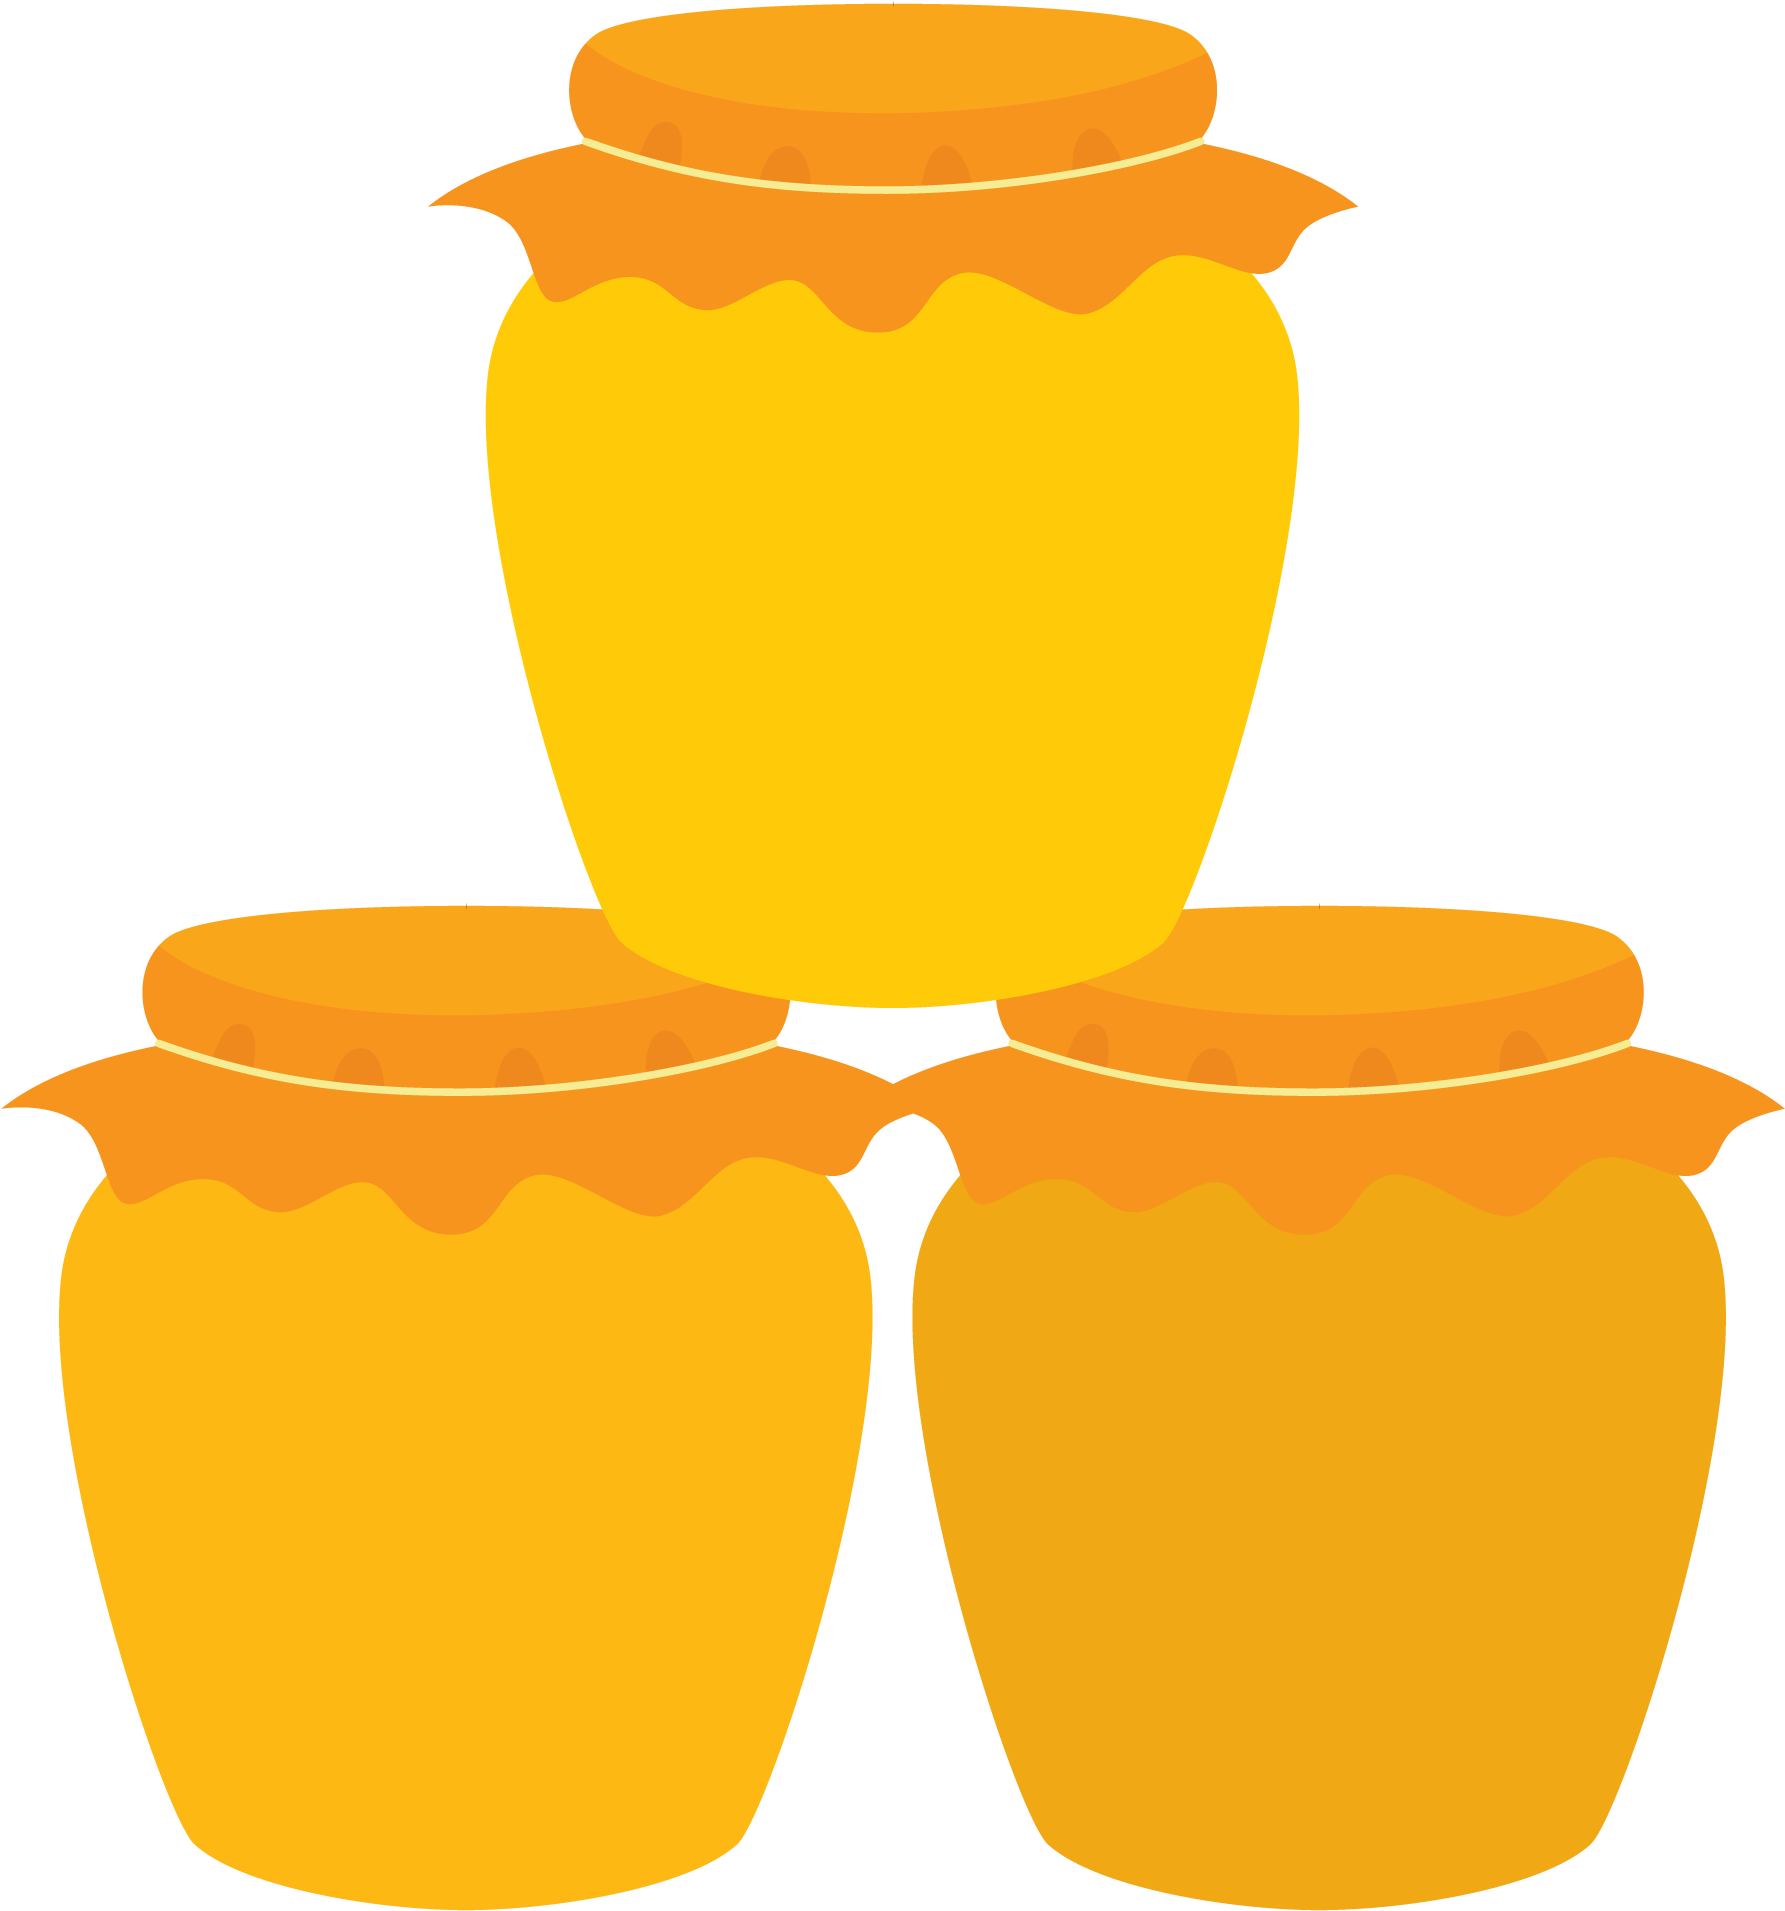 Technical Support - Flat Honey Pot (2000x2207)